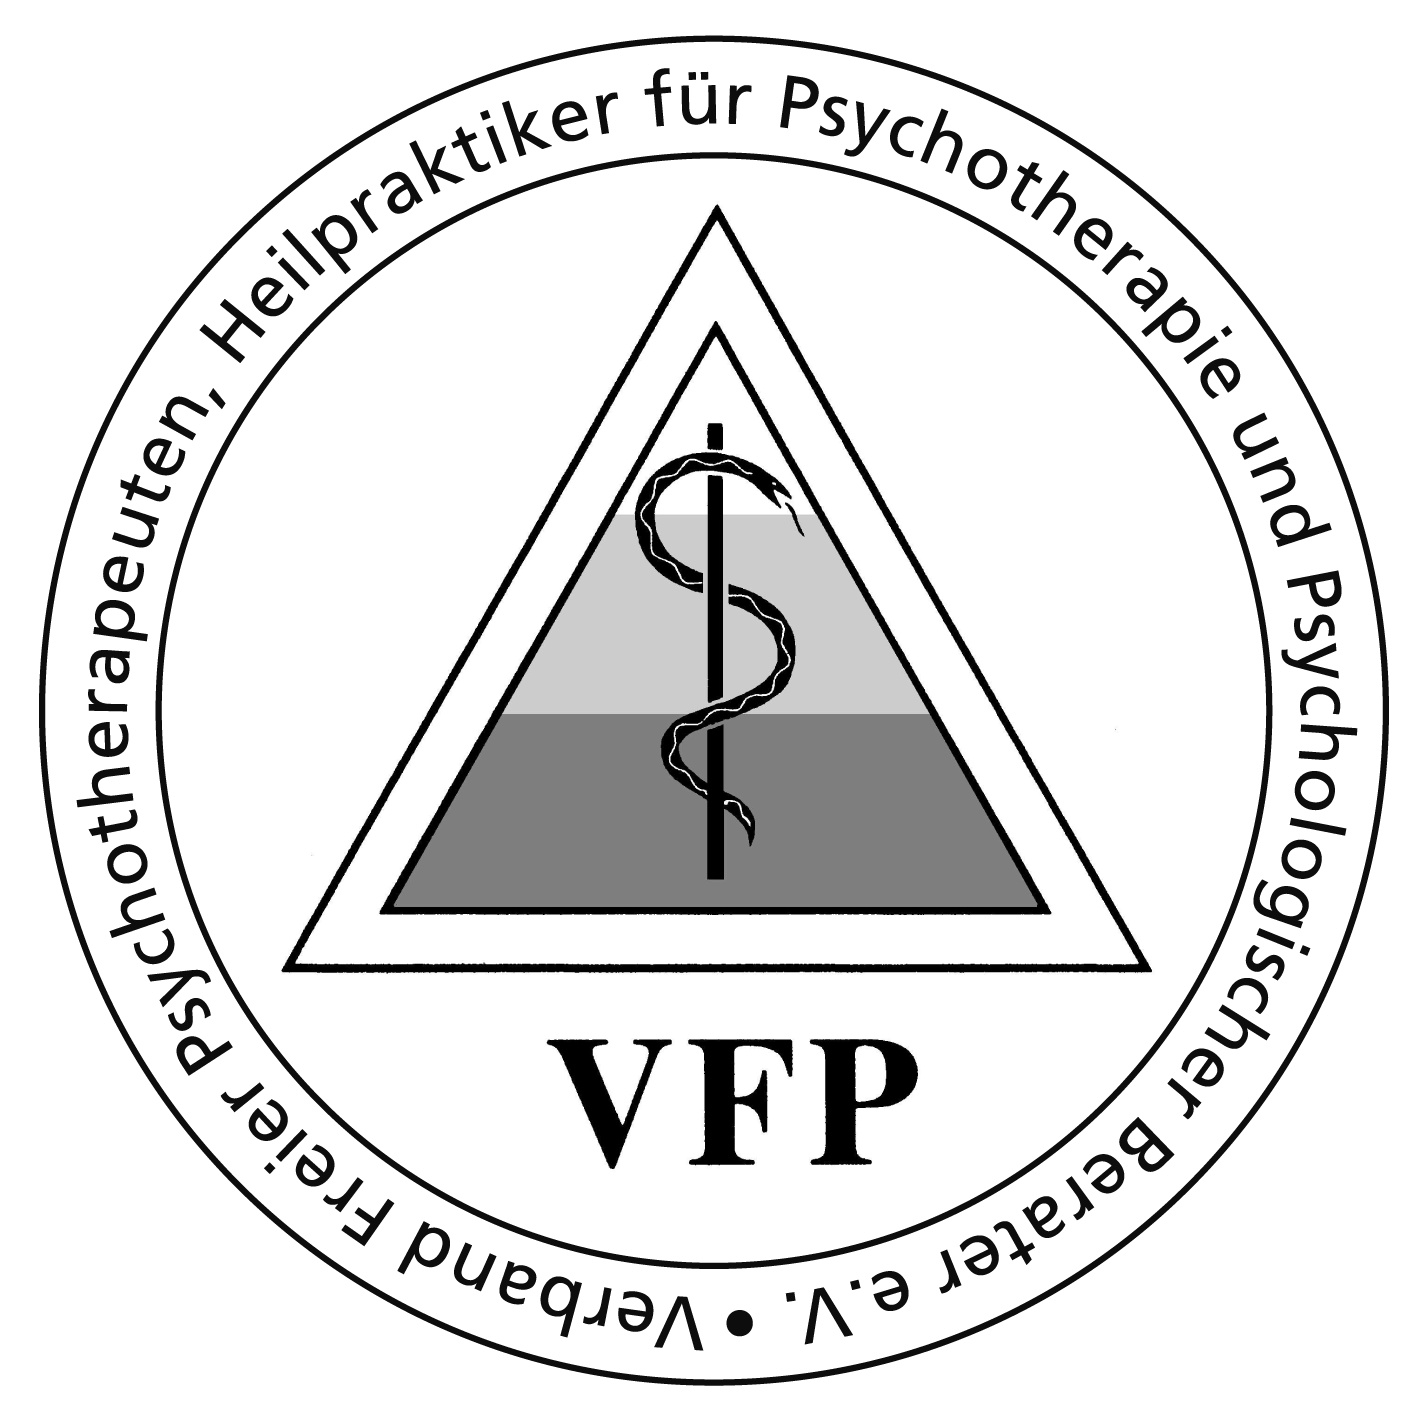 VFB Verbandslogo